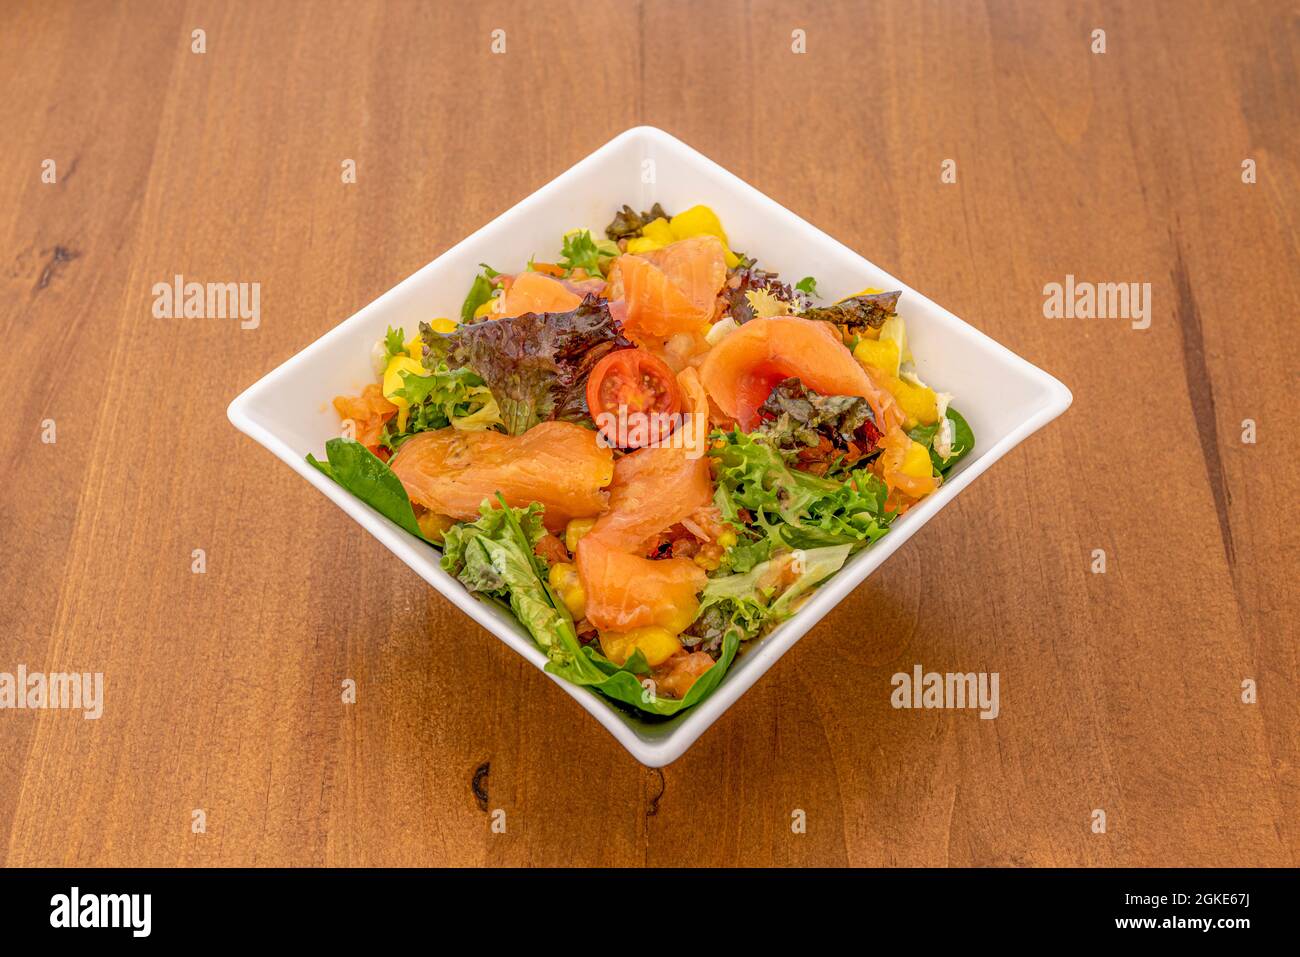 Salade scandinave avec saumon fumé, morceaux d'orange et beaucoup de laitue, escarole et huile d'olive Banque D'Images